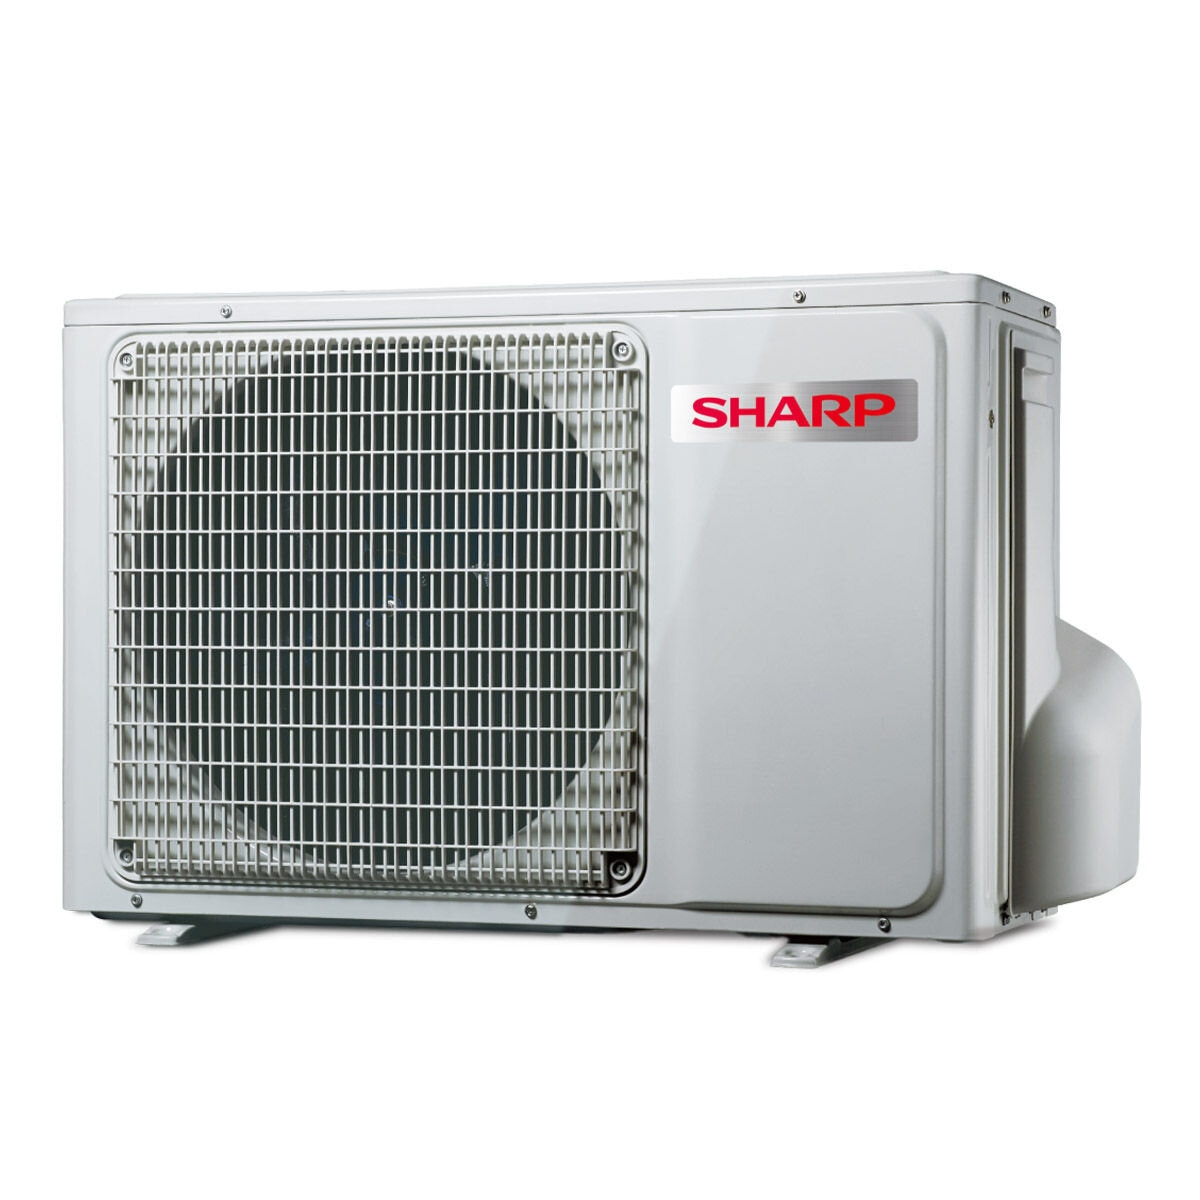 夏普 3 - 5坪 2.9kW 變頻冷暖一對一分離式冷氣 含運費及基本安裝